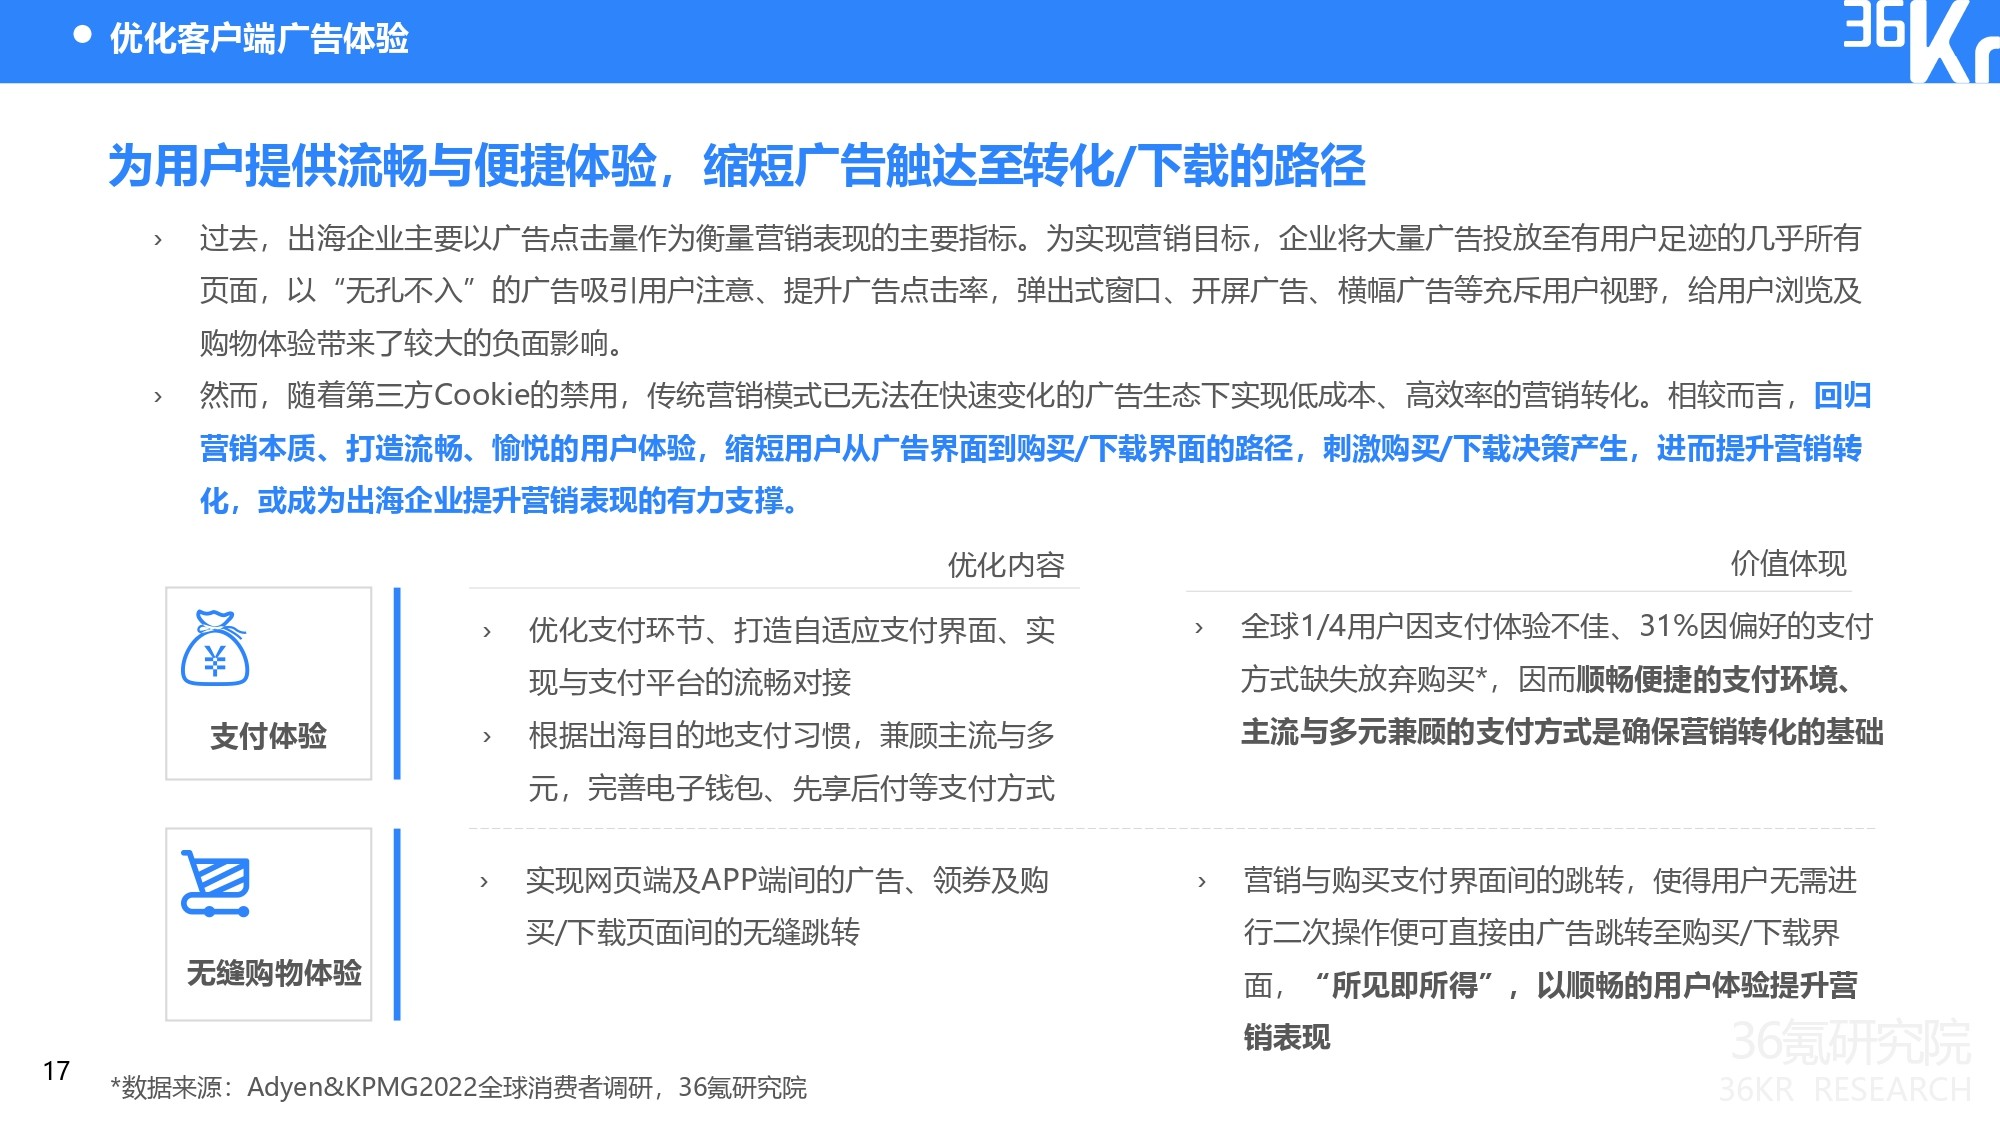 36氪研究院 |2022年隐私保护下中国出海企业数字营销研究报告插图20